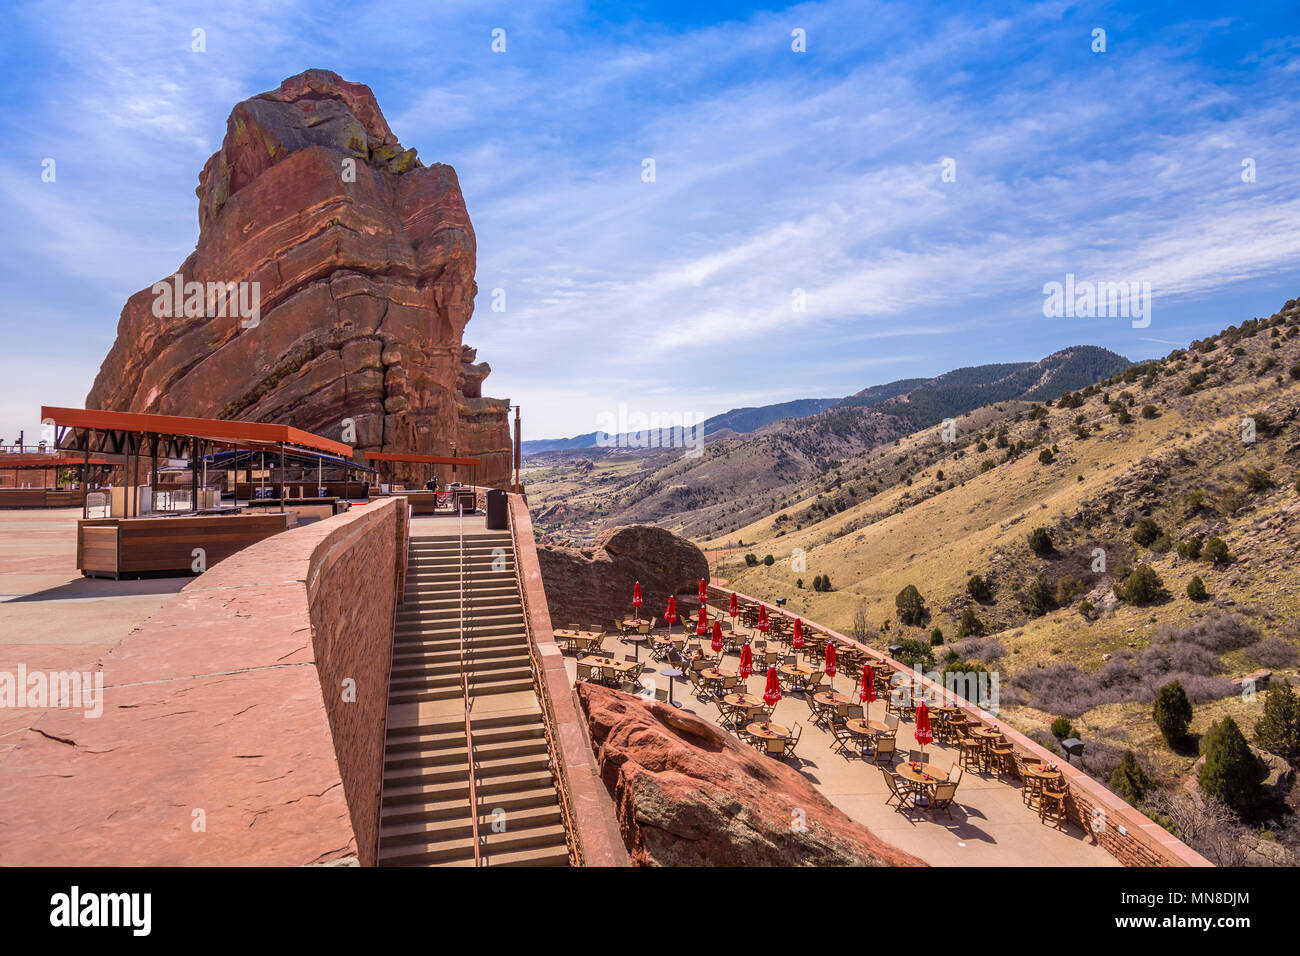 El Anfiteatro de las rocas rojas 'Ship' Rock Grille Restaurant, Colorado,  Estados Unidos Fotografía de stock - Alamy